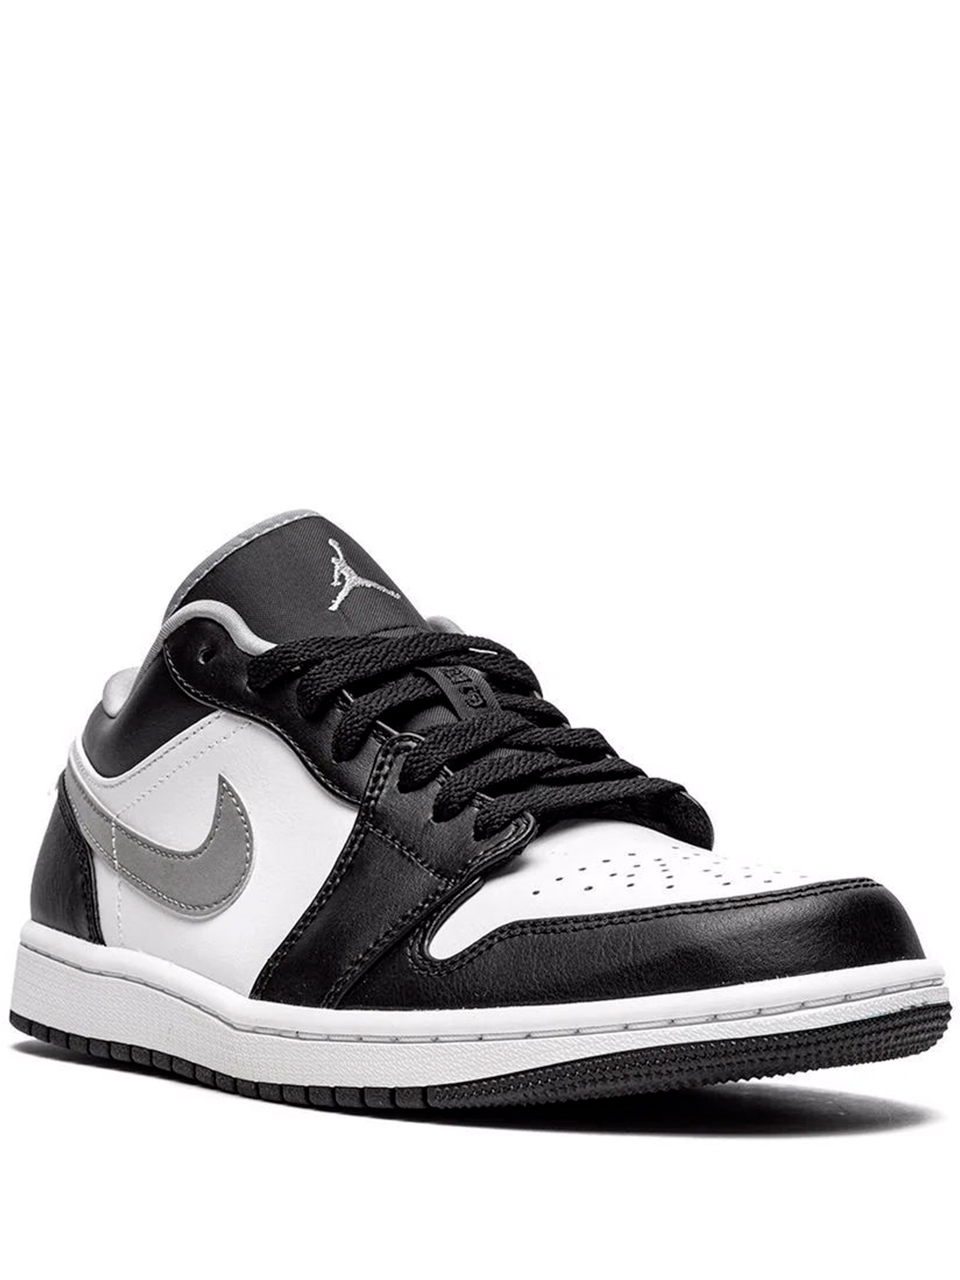 Imagem de: Tênis Nike Air Jordan 1 Preto e Branco